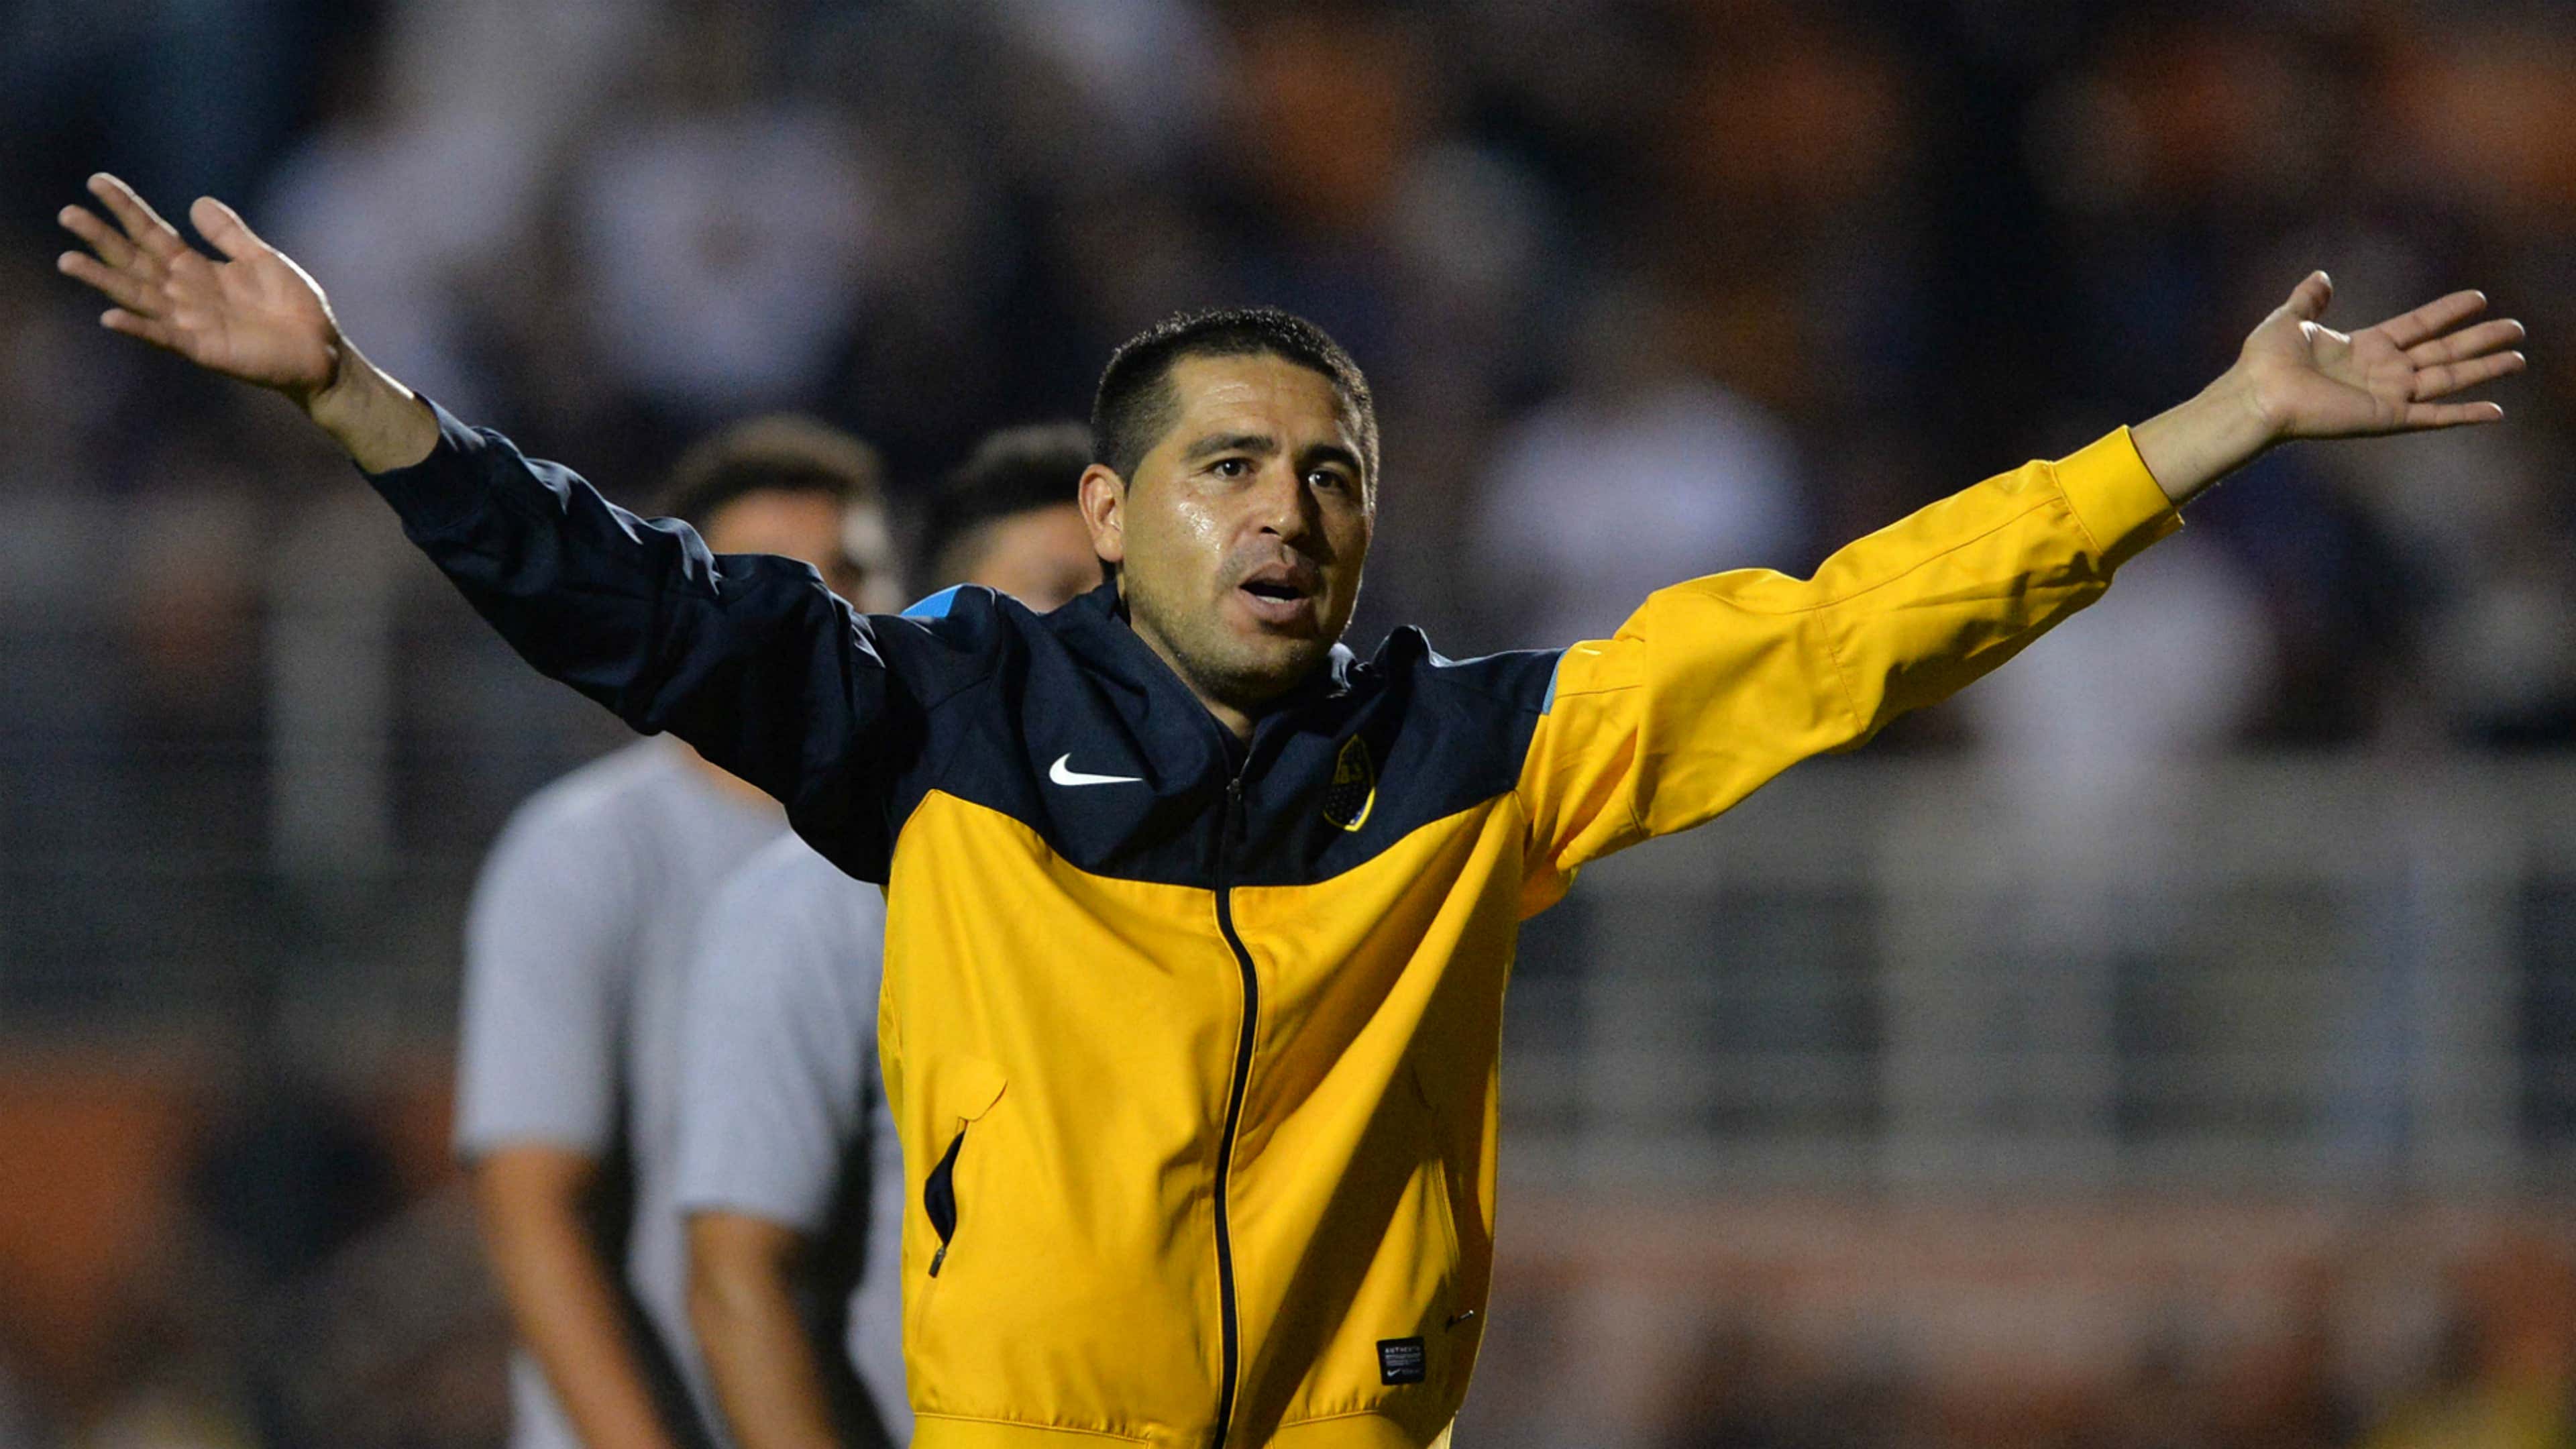 Juan Roman Riquelme Boca Juniors